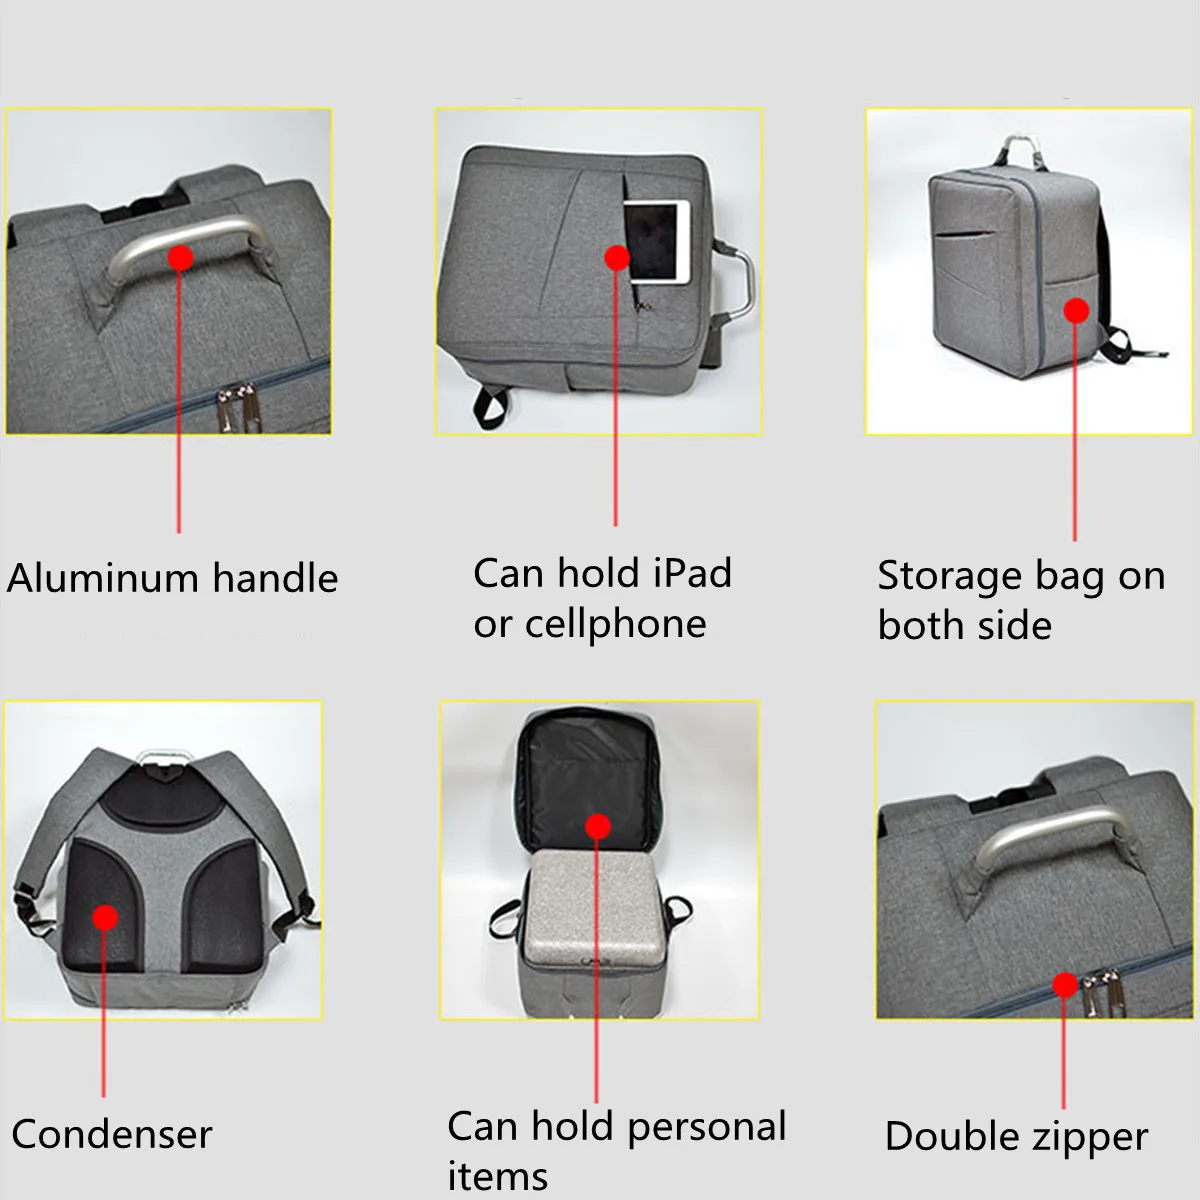 1 шт. рюкзак Shoulde сумка для DJI Phantom 4 Drone серый светильник Модный водонепроницаемый БПЛА чехол для переноски сумки для хранения